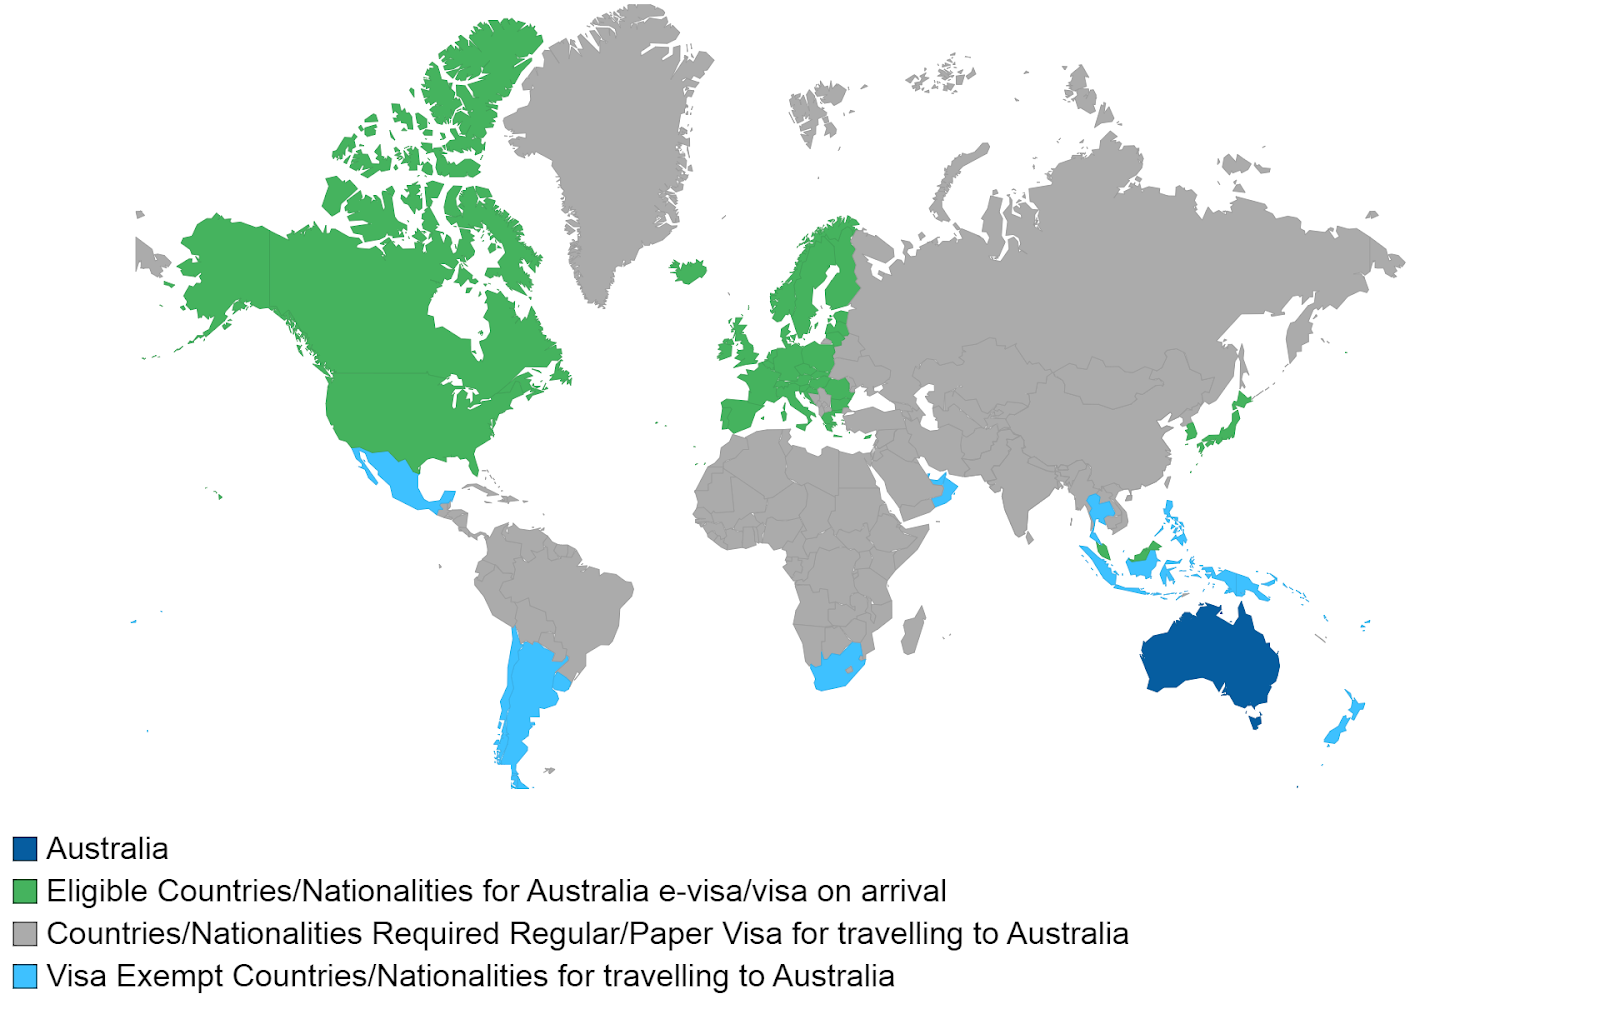 Who is eligible for an Australia ETA?